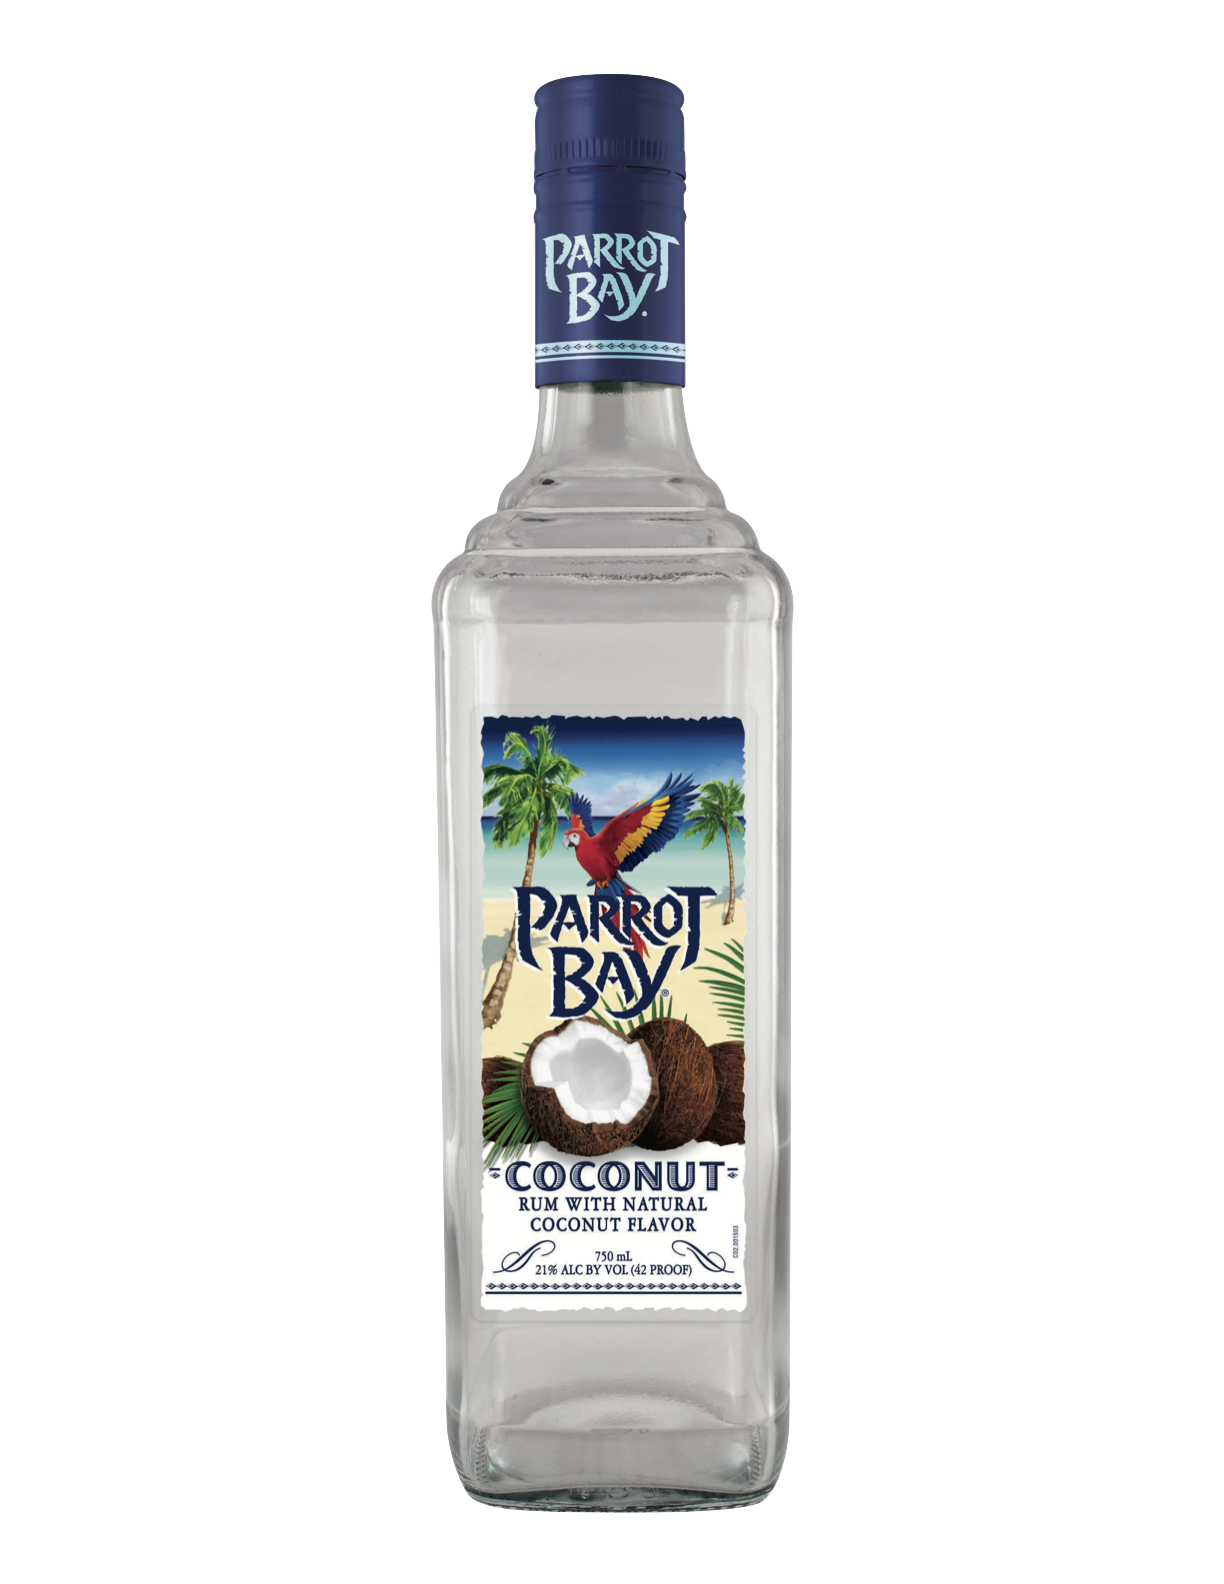 Parrot Bay Coconut rum